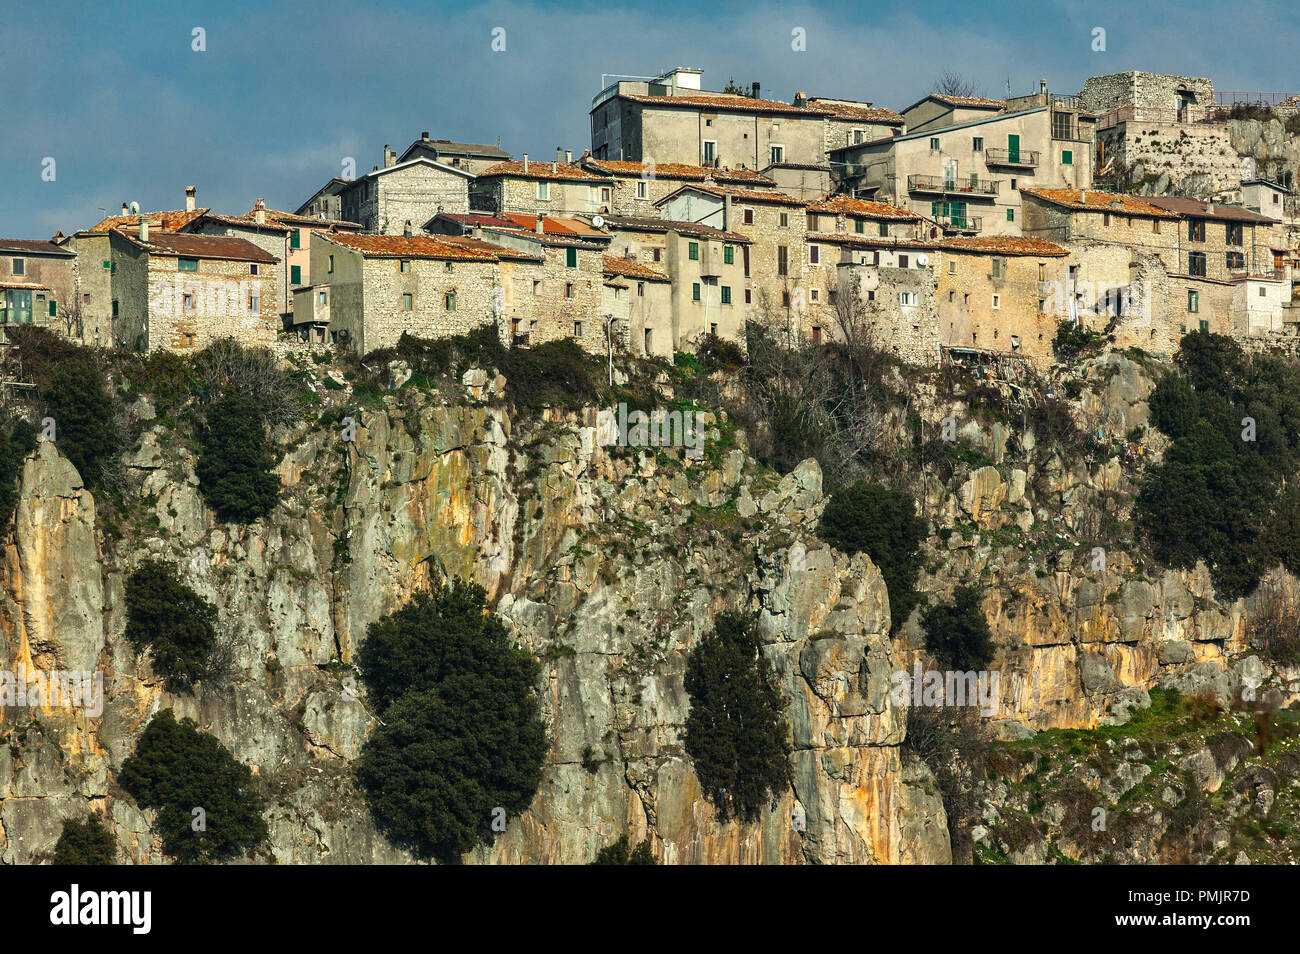 village on the edge of clift. Pietrasecca, Abruzzo Stock Photo